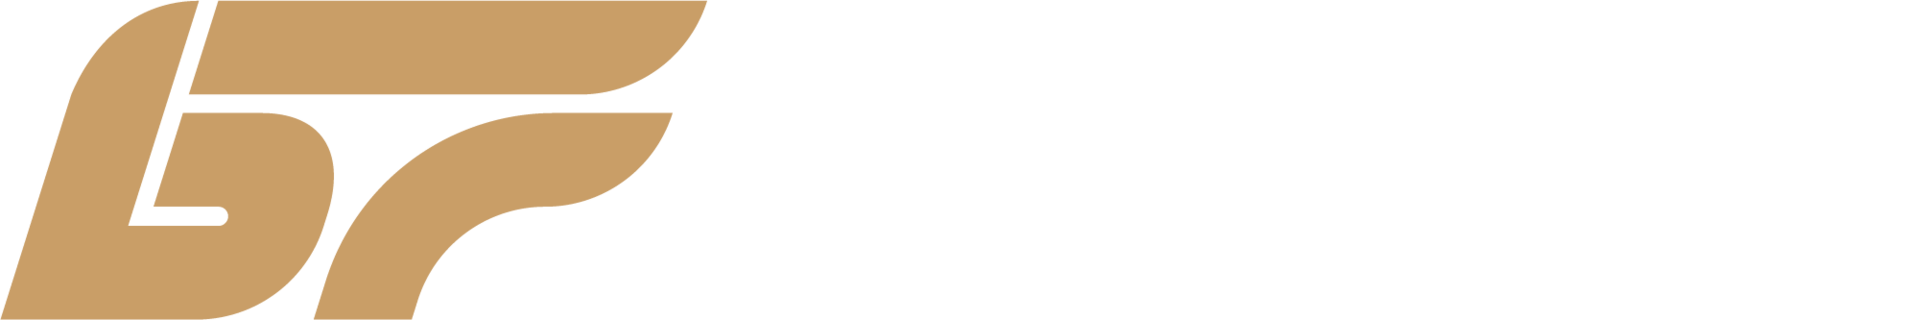 logo Bimmer Fahrwerke